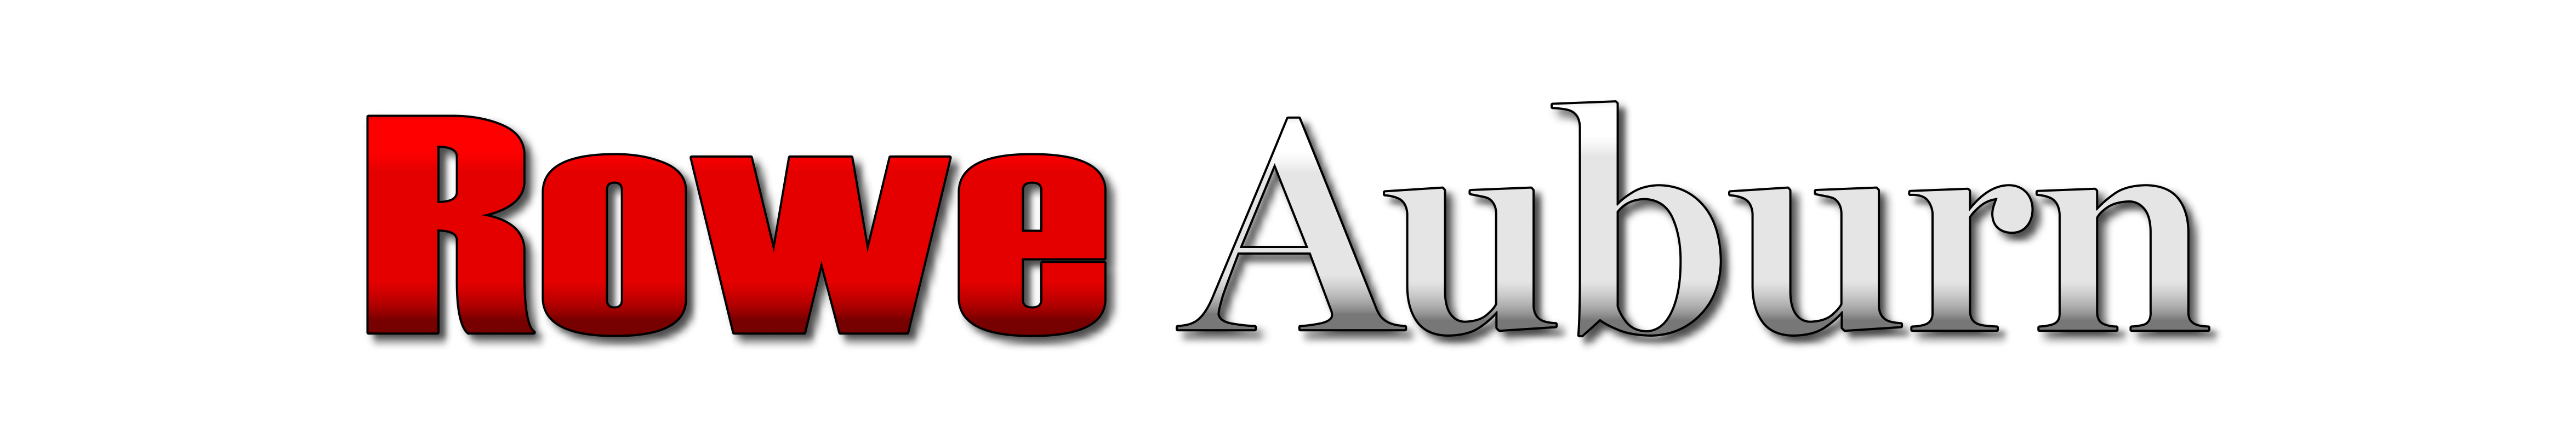 Rowe Auburn logo